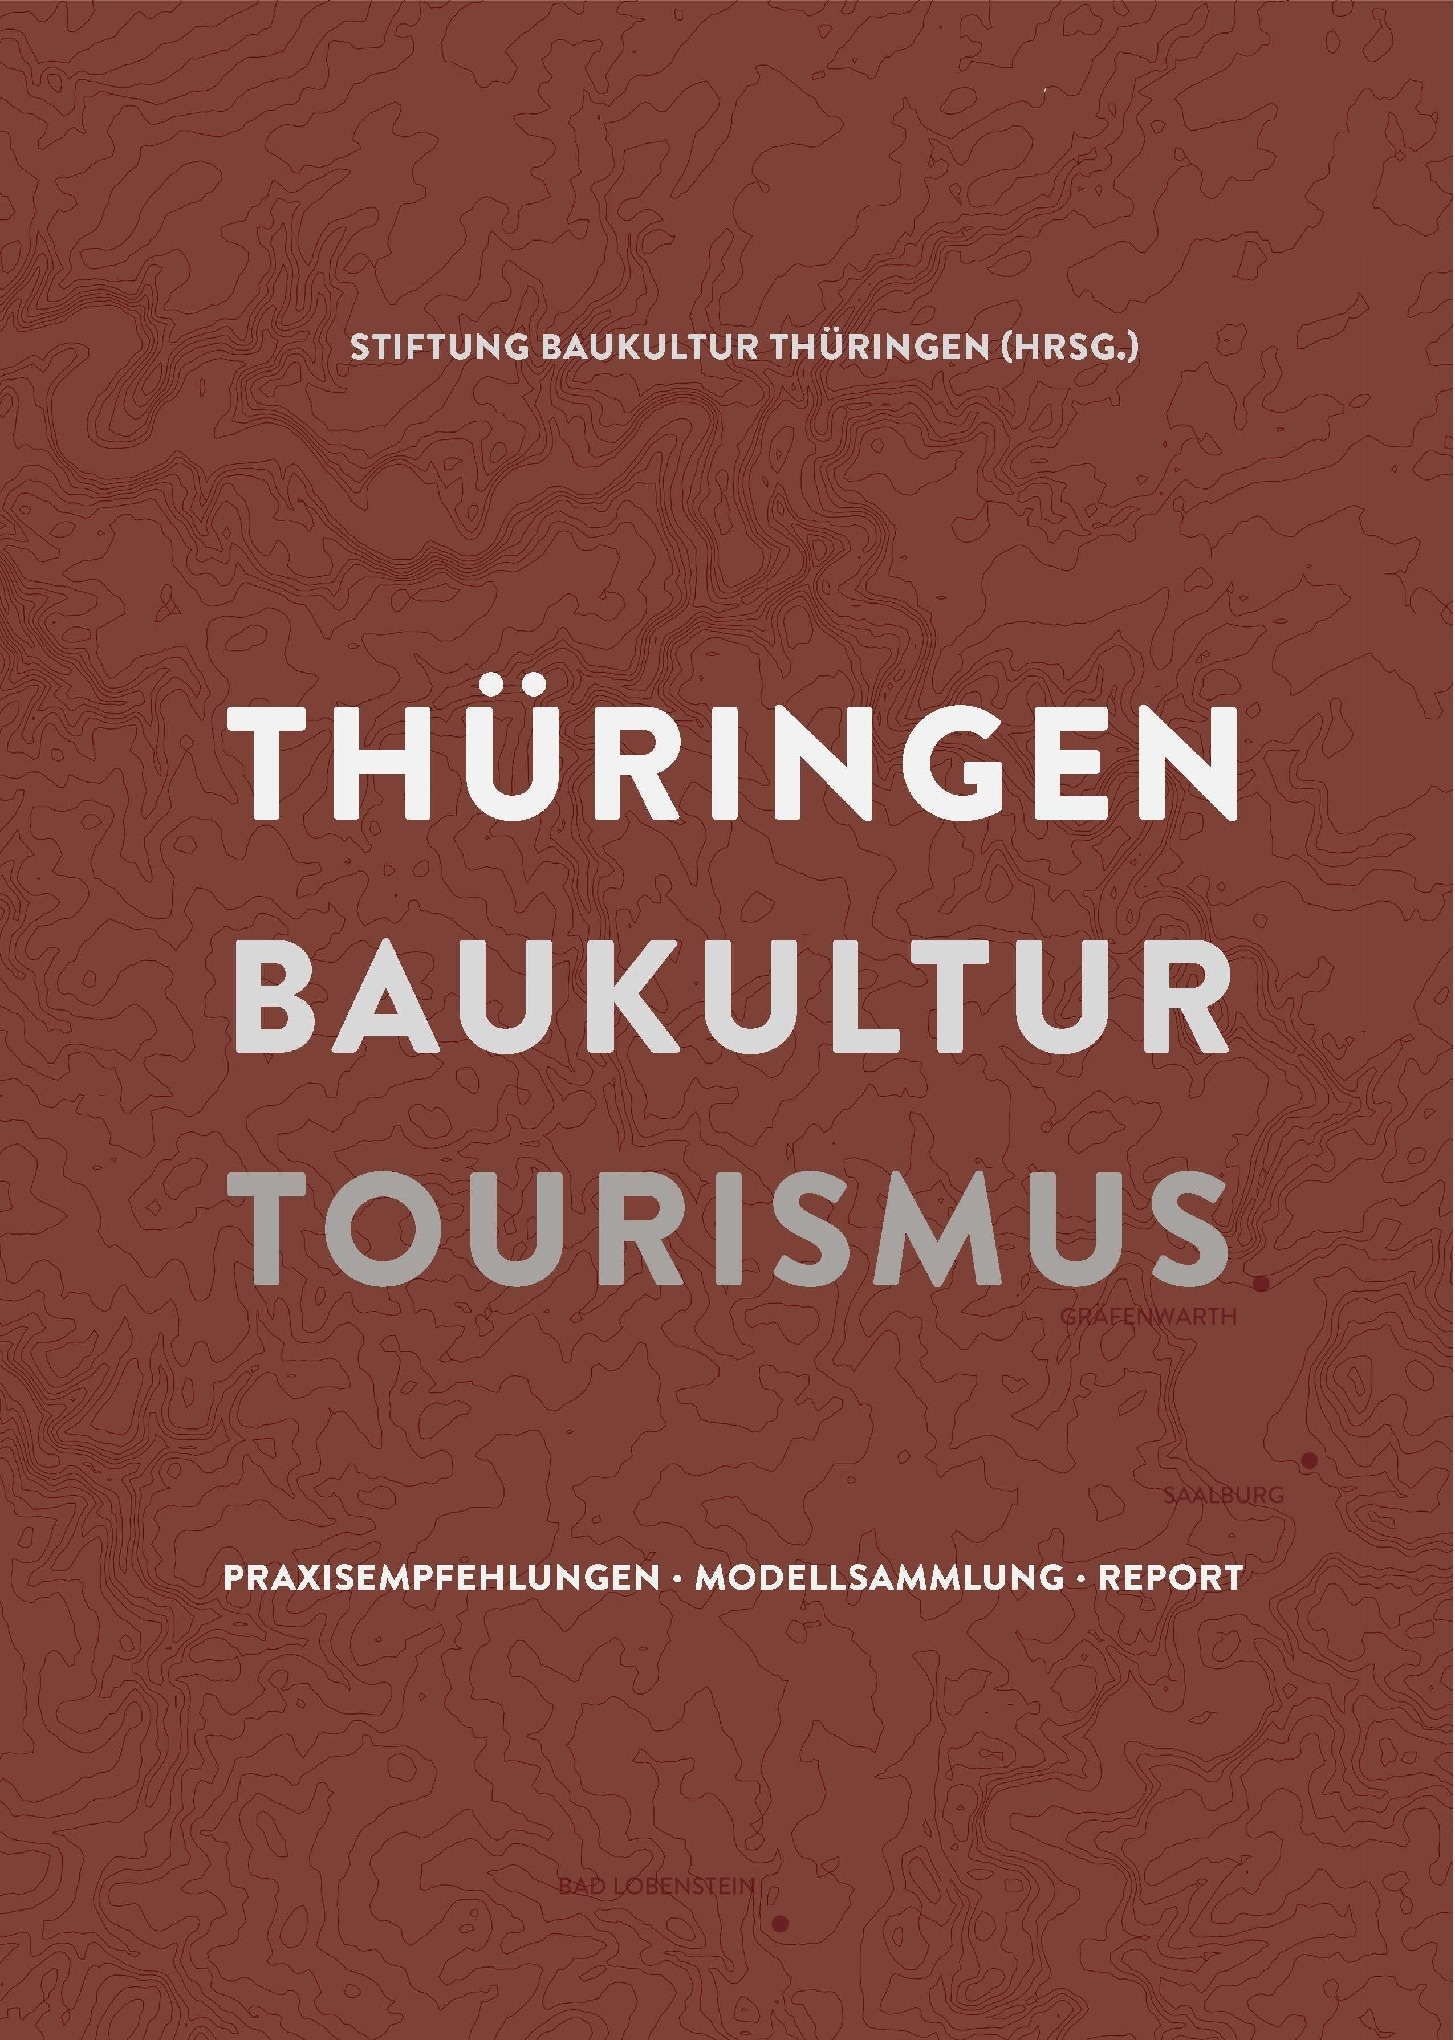 Publikation | Thüringen Baukultur Tourismus, Figure: Stiftung Baukultur Thüringen